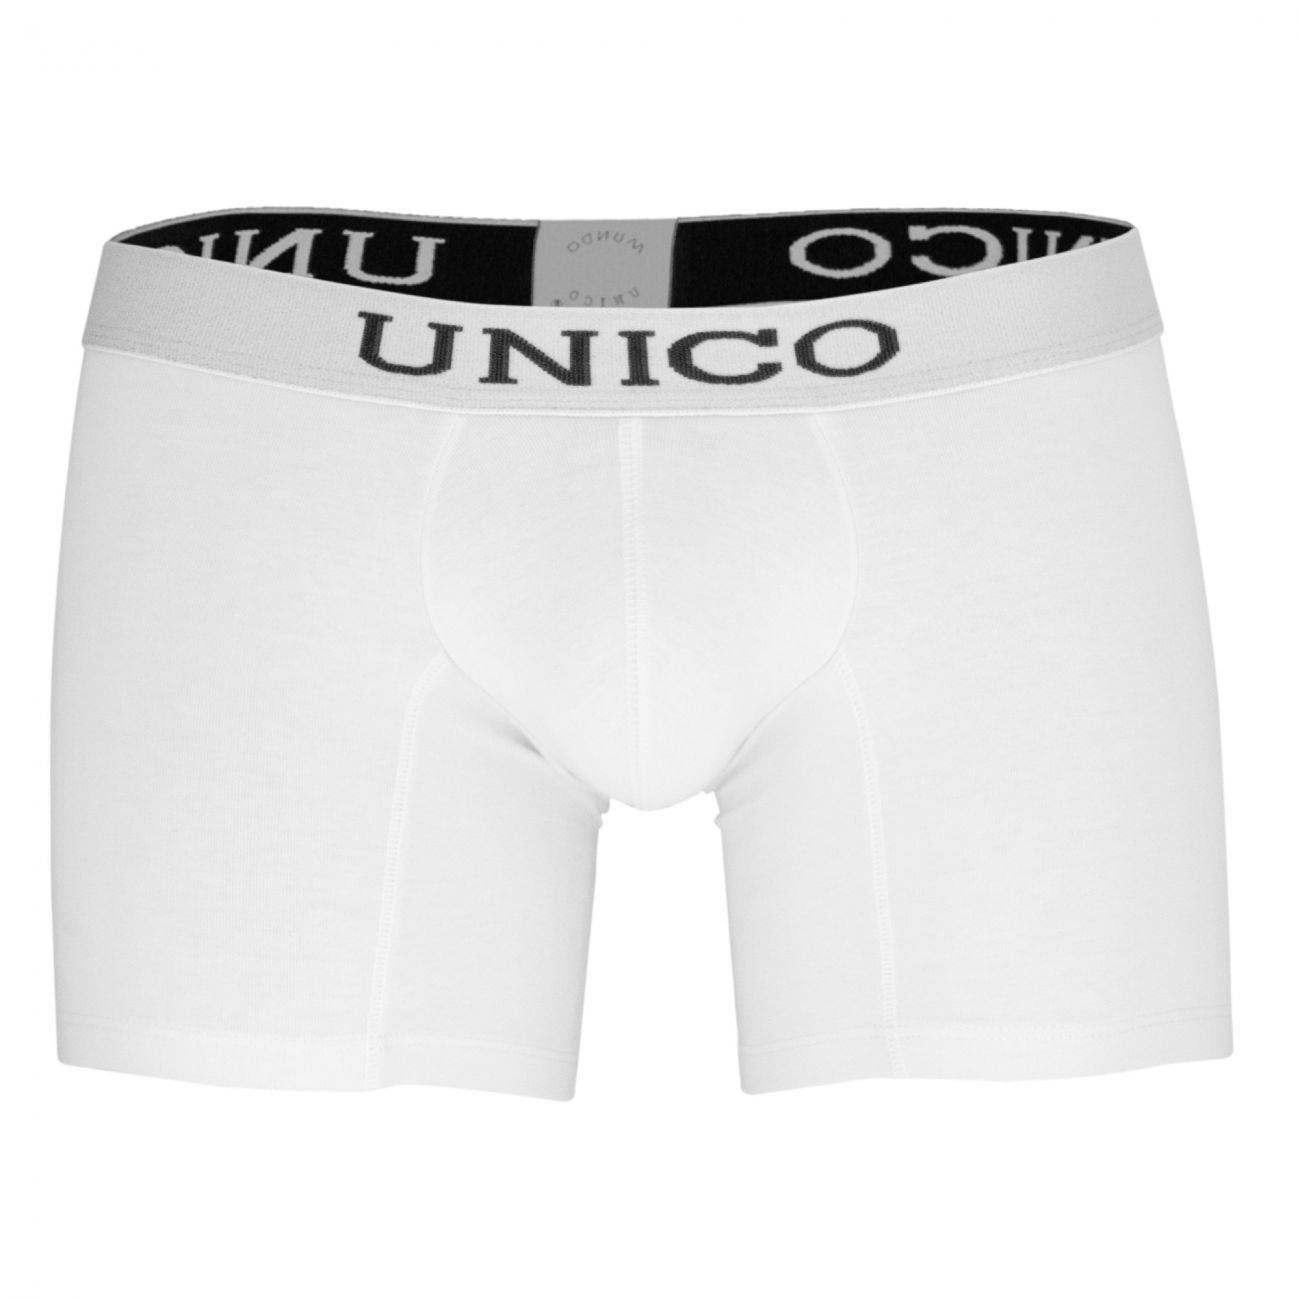 Unico 9610090100 Boxer Briefs Cristalino White